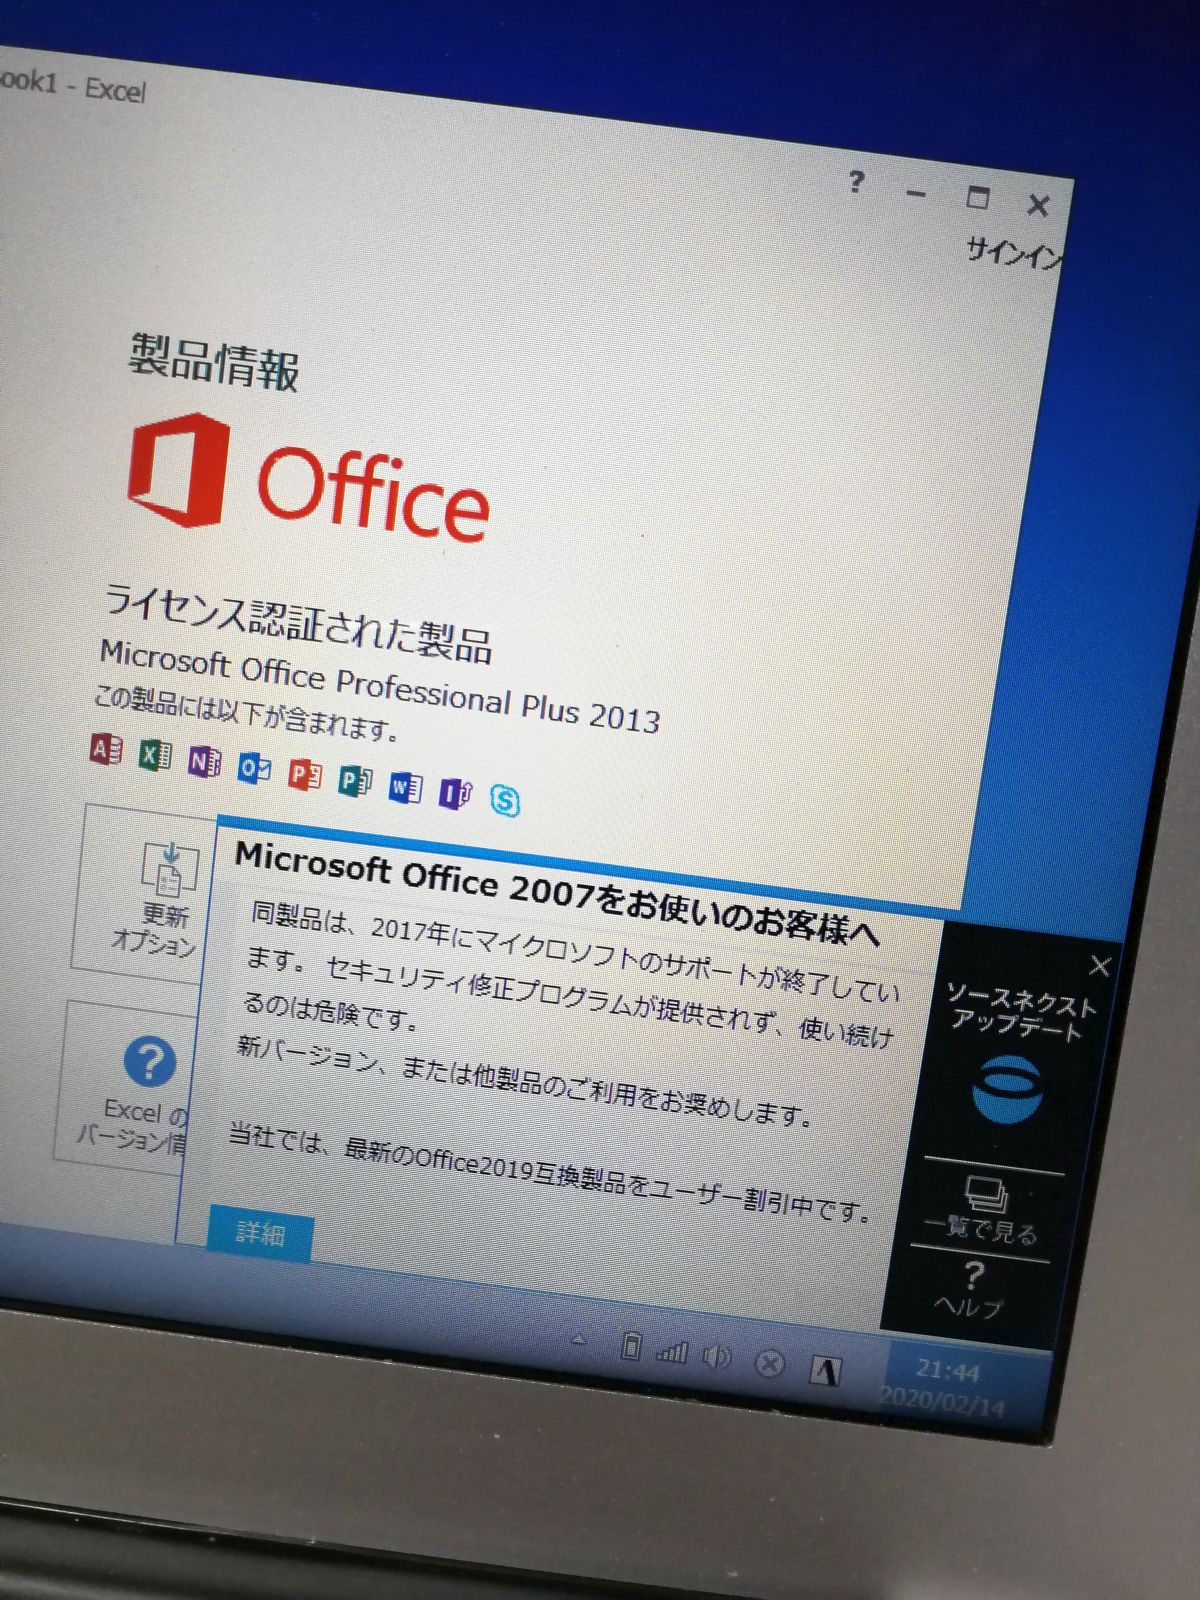 Microsoft Office 2007をお使いのお客様へ